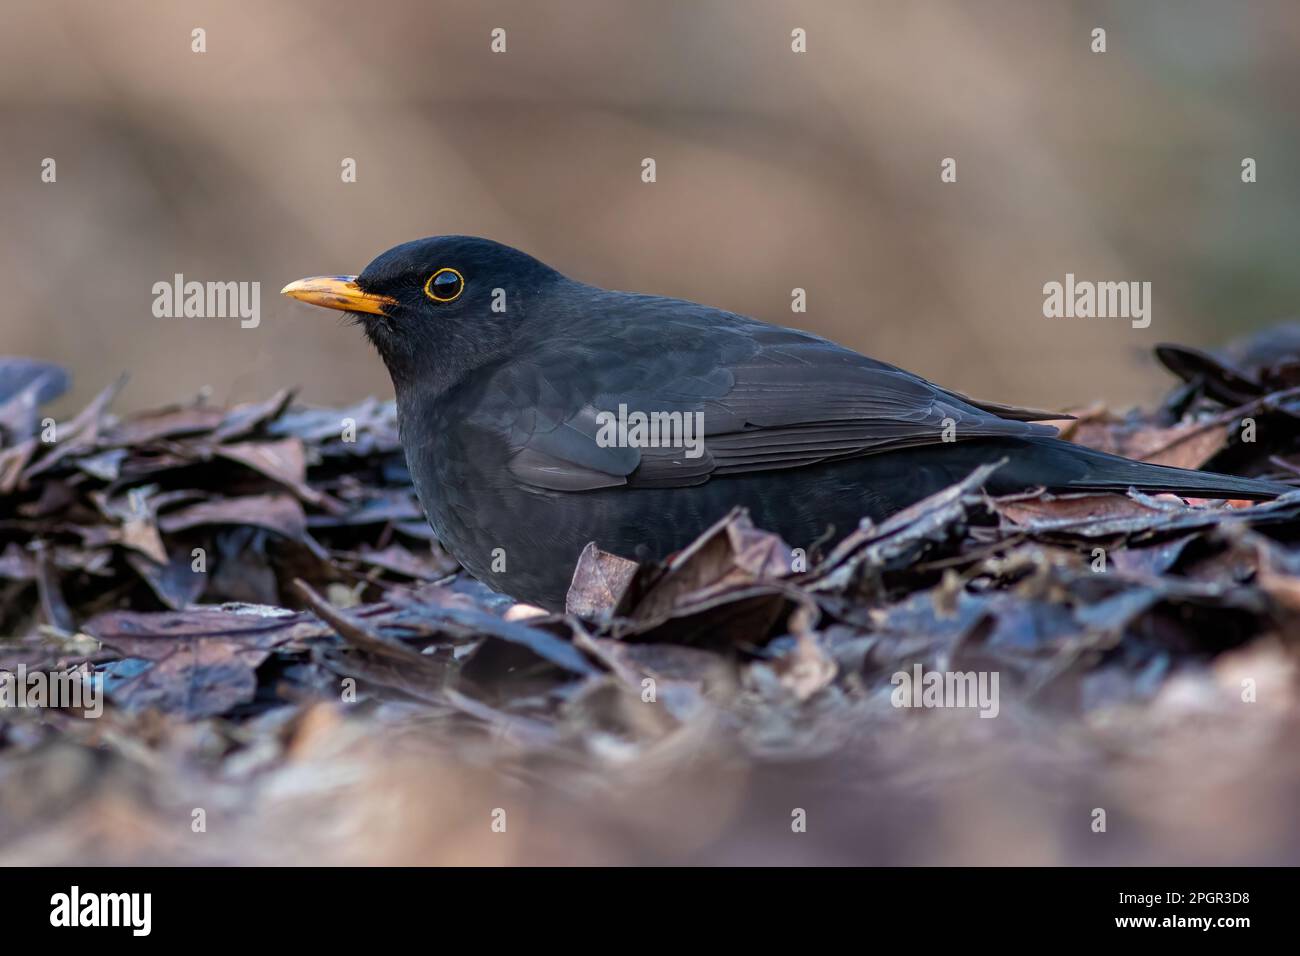 gros plan d'un blackbird mâle pris au niveau du sol. Il y a de l'espace autour de l'oiseau Banque D'Images